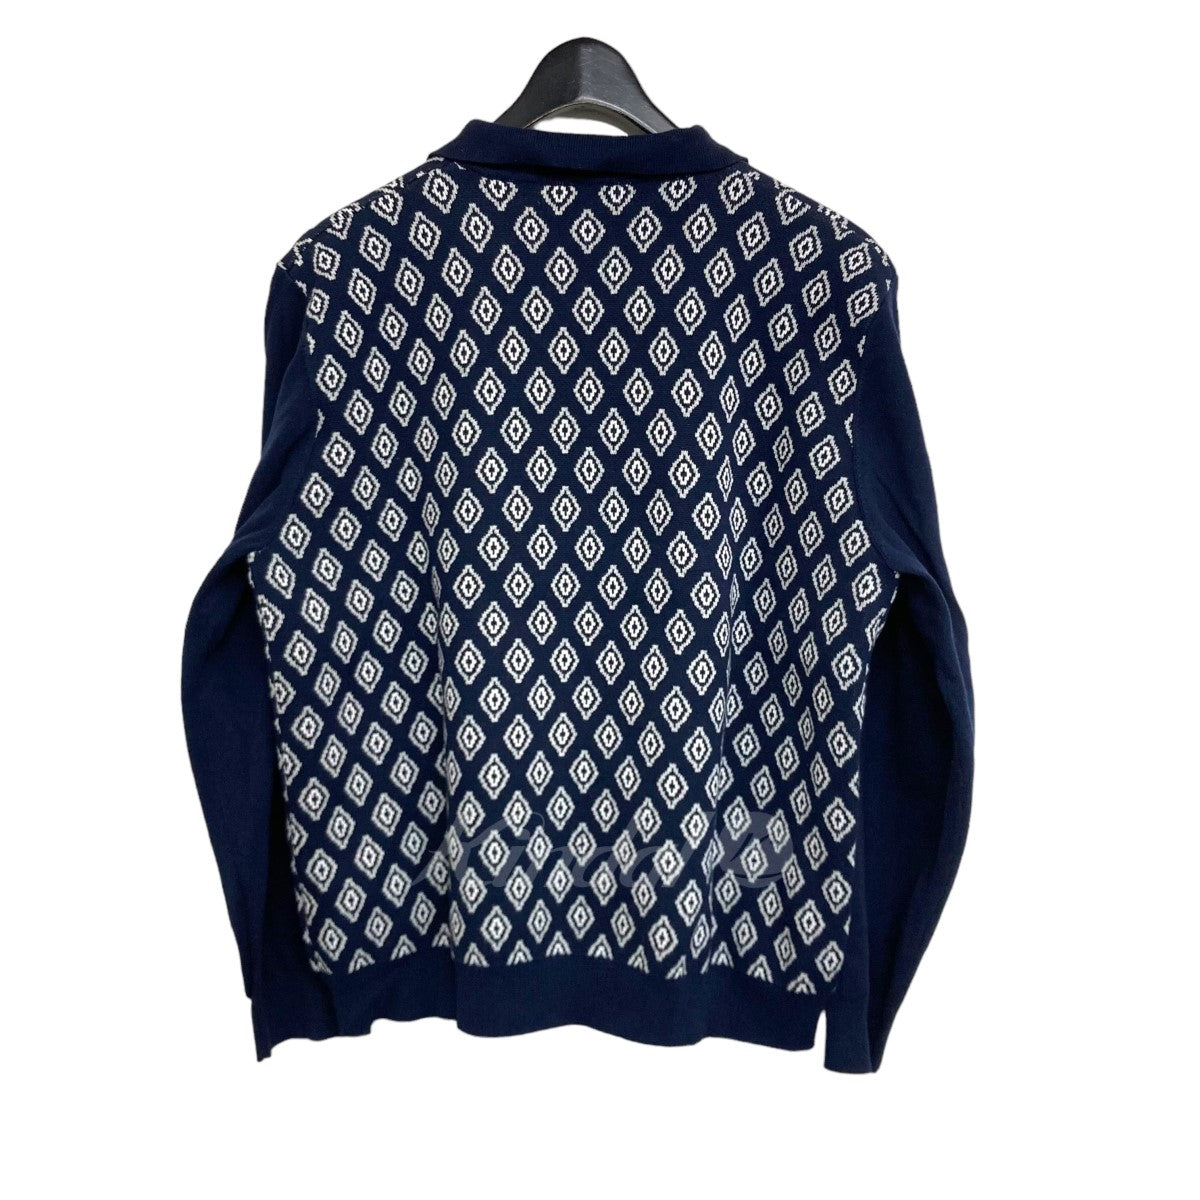 8,400円tttmsw 23ss diamond knit polo navy Mサイズ